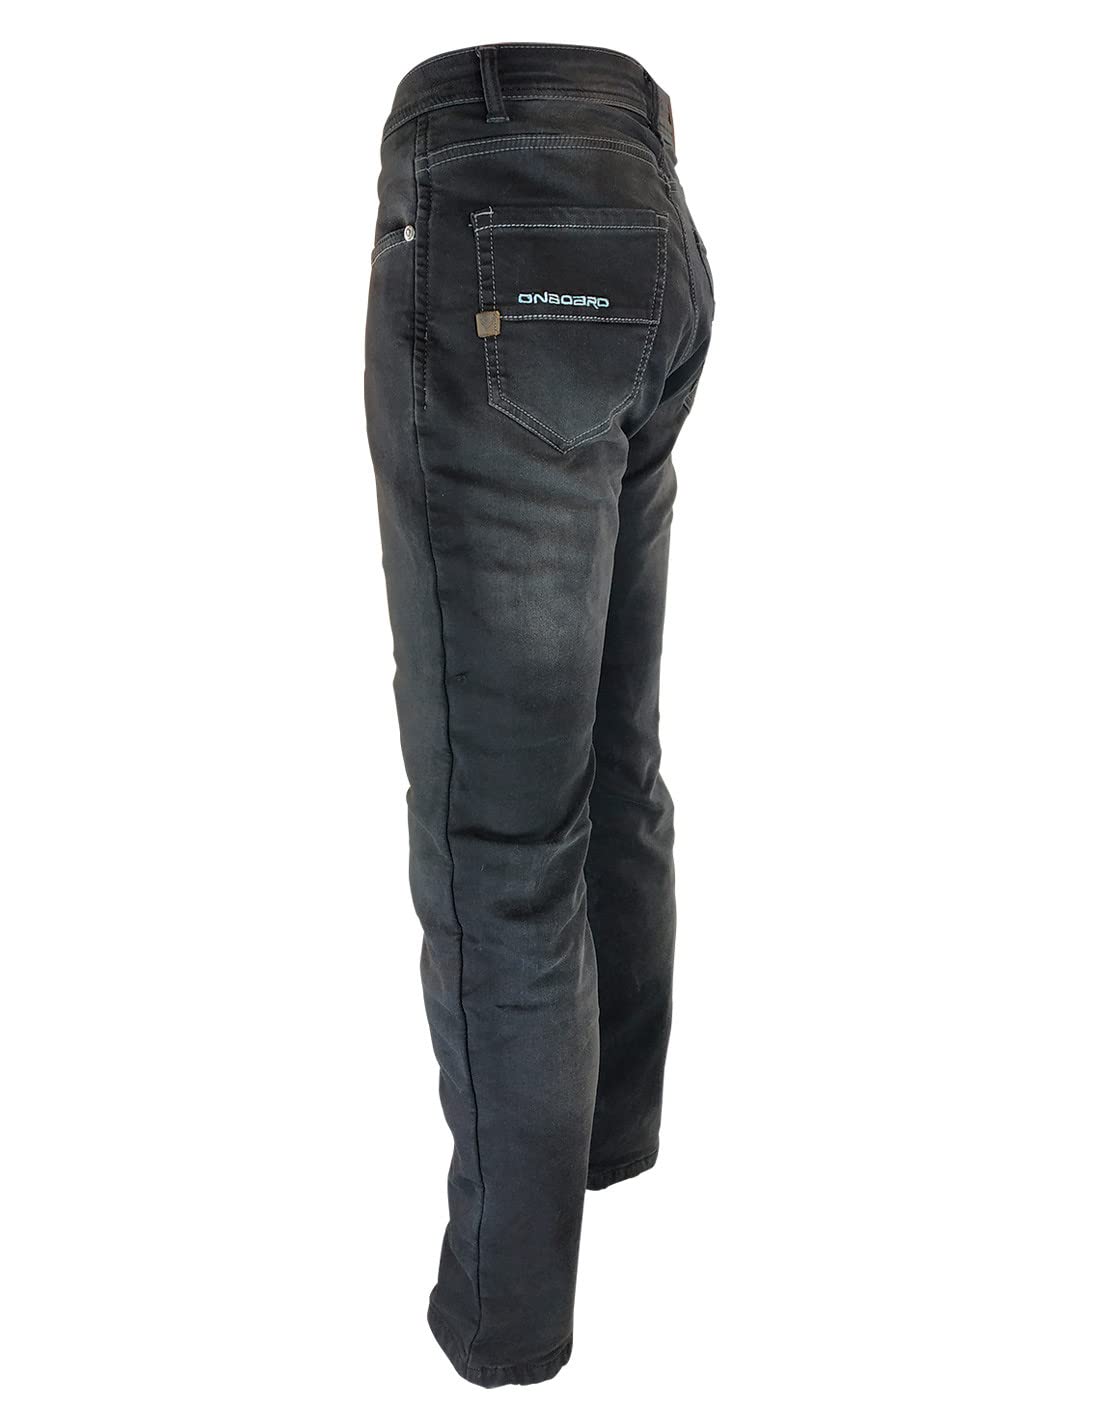 ON BOARD Concept Jeanshose mit Protektoren, Herren, 30, dunkelblau von ON BOARD